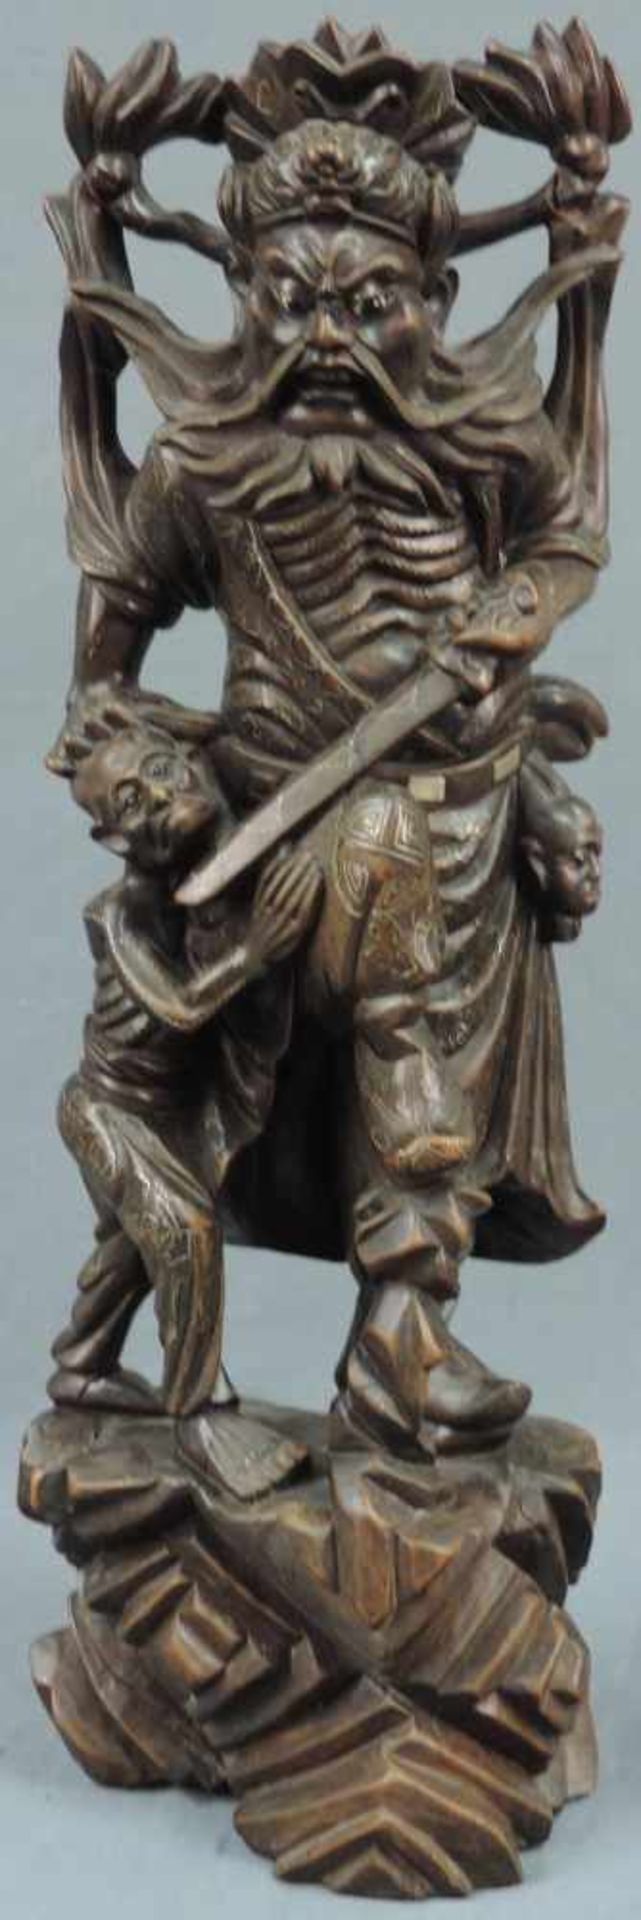 Skulptur. Holz mit Silbereinlagen, China, alt. 51 cm hoch. Wohl Kuan Kung, der chinesische Gott